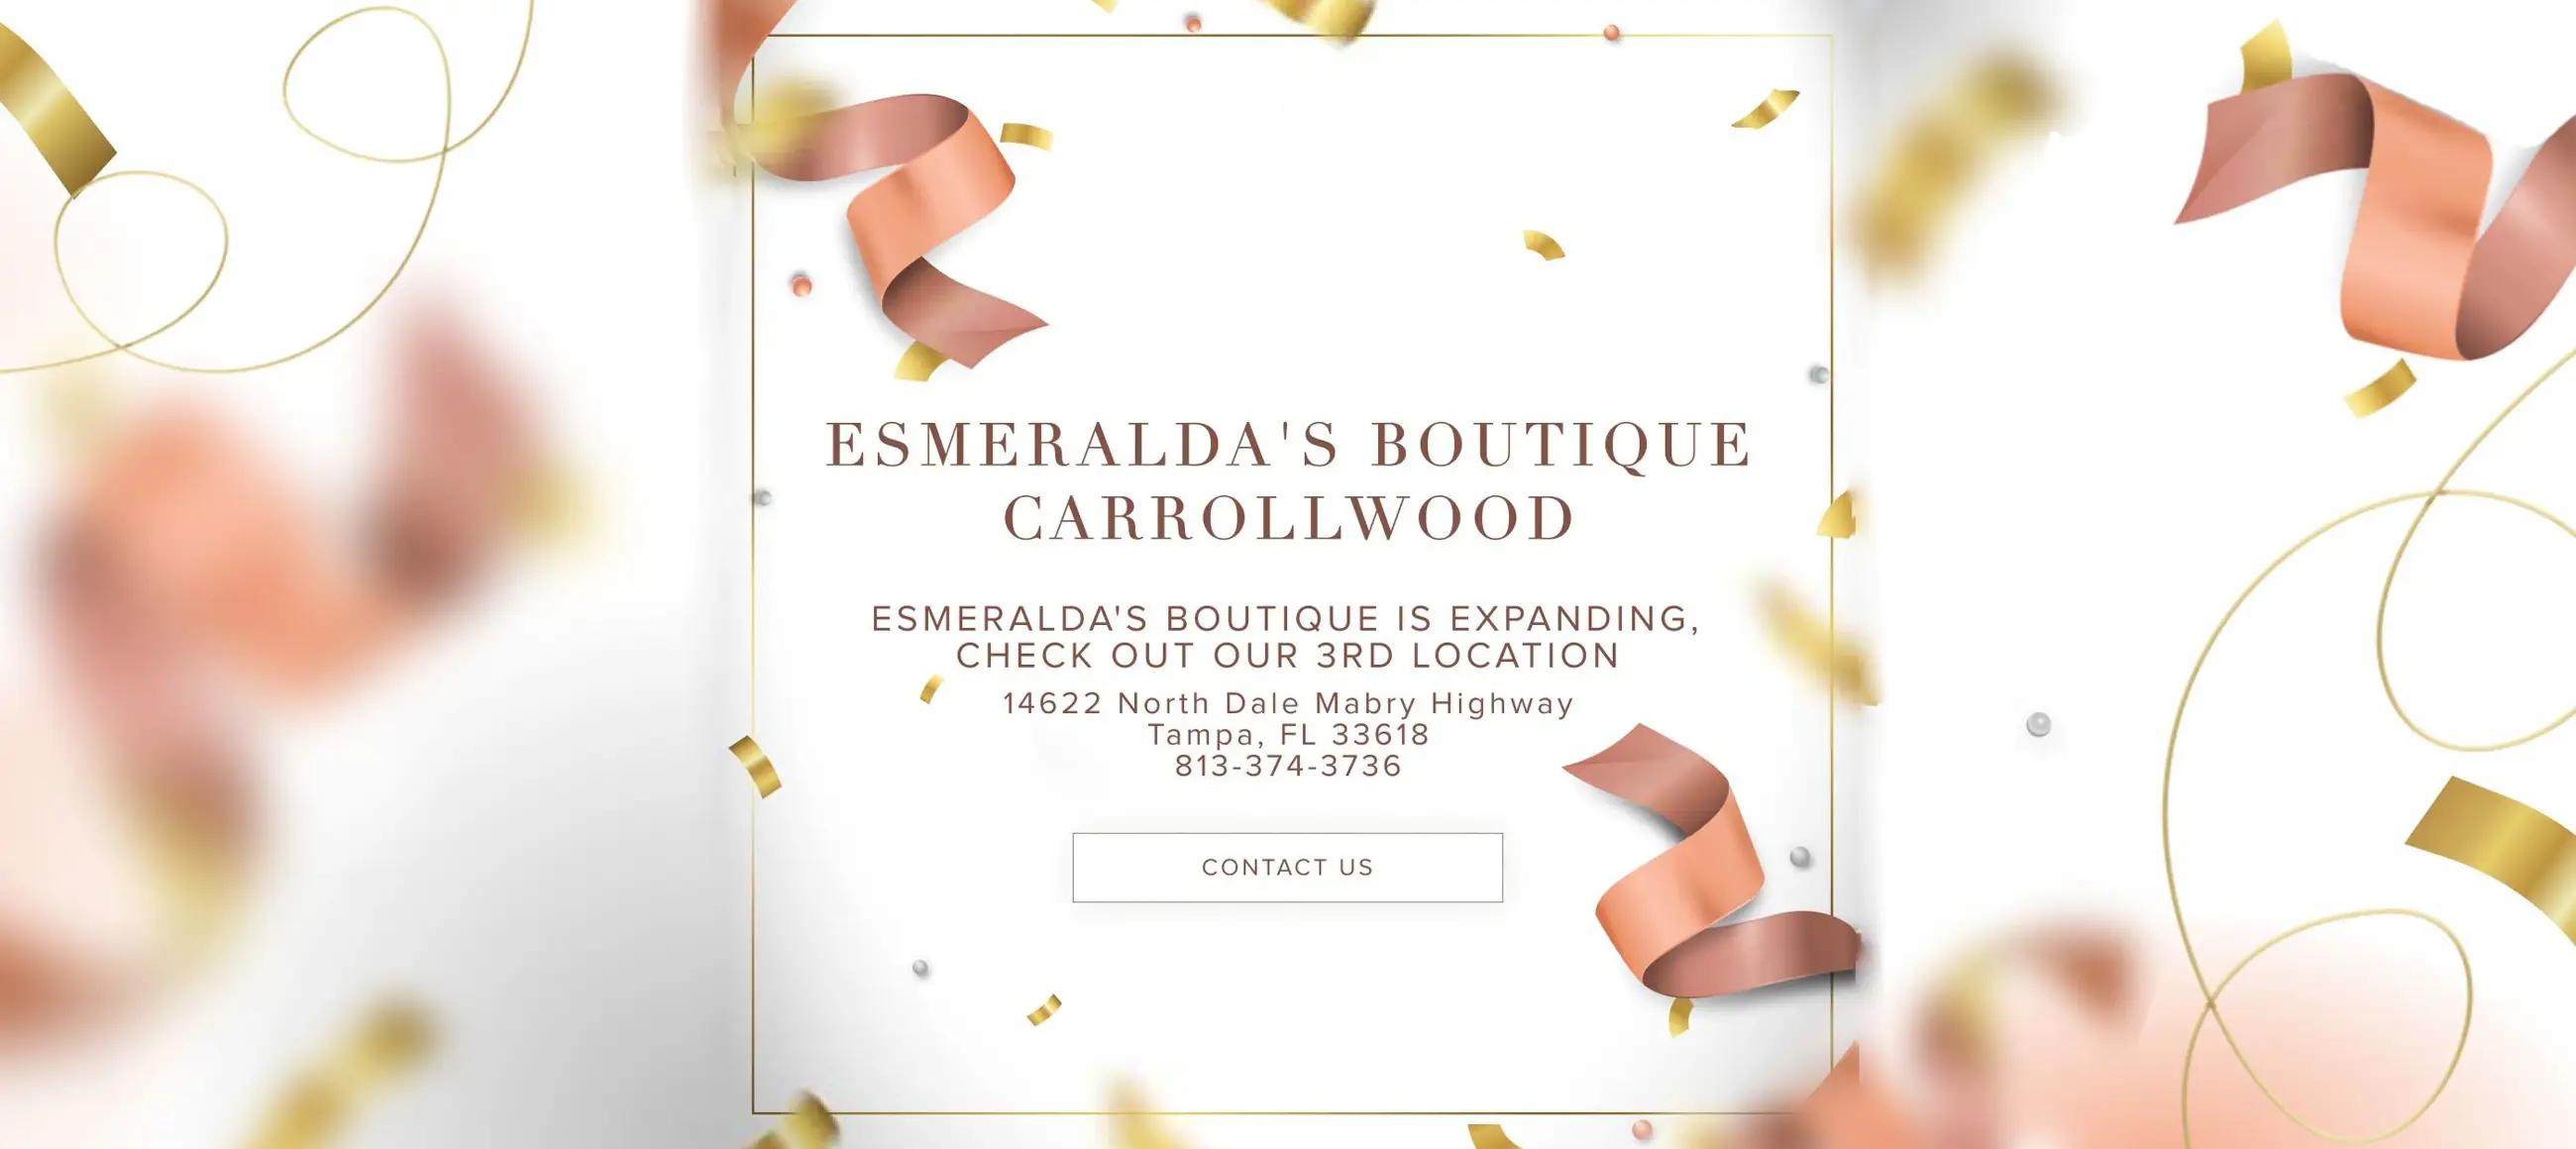 Esmeralda's Boutique Carrollwood Desktop Image